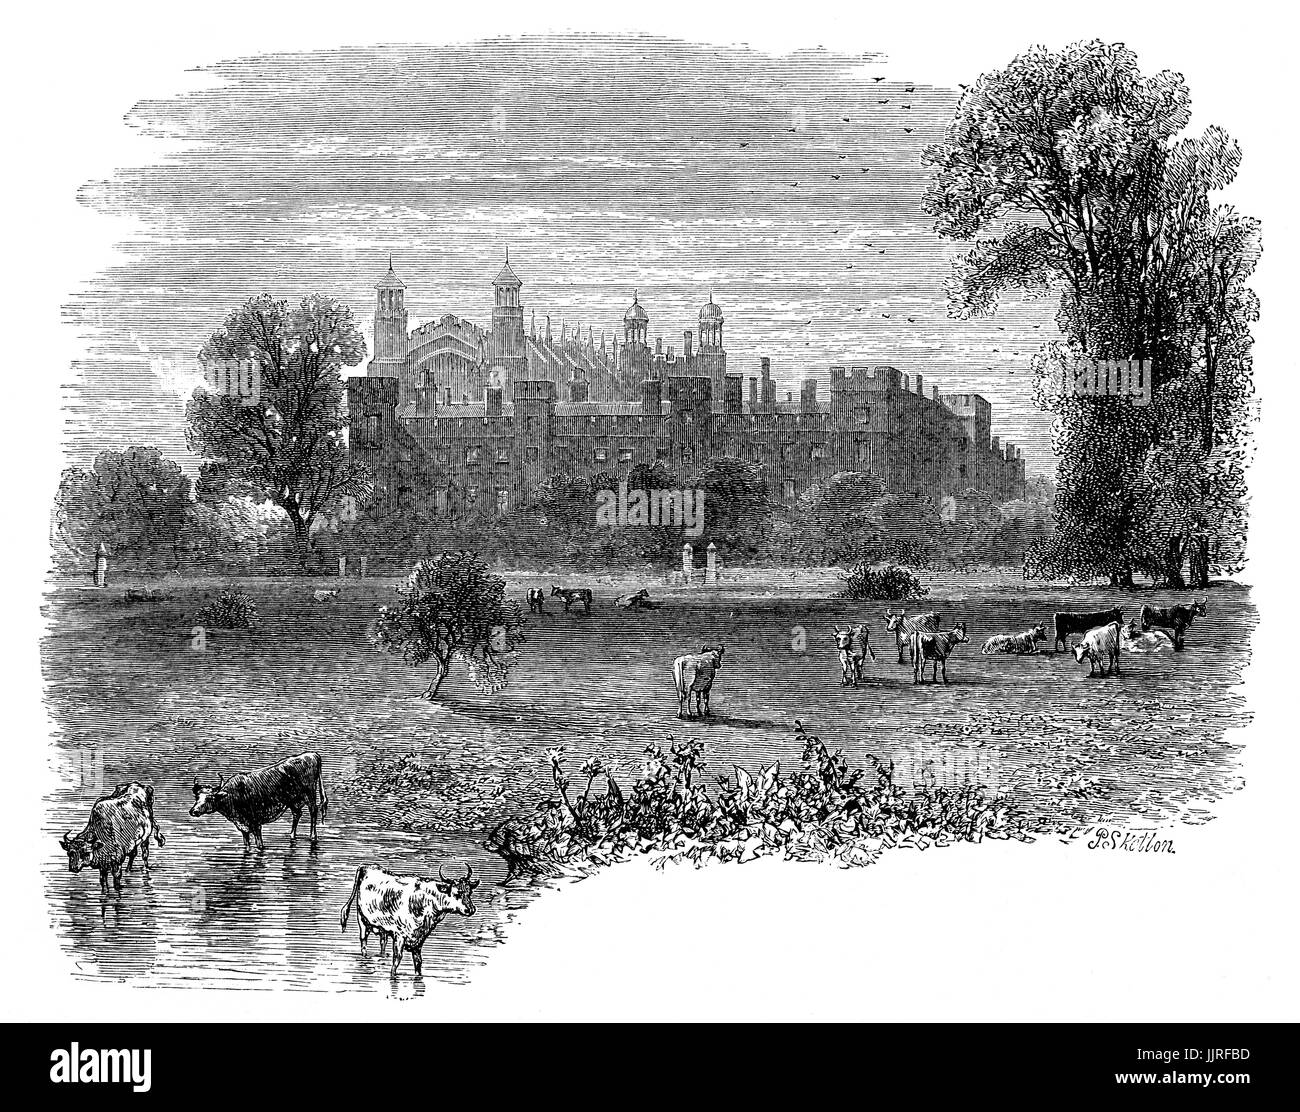 1870: una vista dal fiume Tamigi di Eton College, un indipendente inglese scuola per ragazzi fondata nel 1440 dal Re Enrico VI come "il re della Scuola di Nostra Signora di Eton oltre Wyndsor', Eton, Berkshire, vicino a Windsor, in Inghilterra. Foto Stock